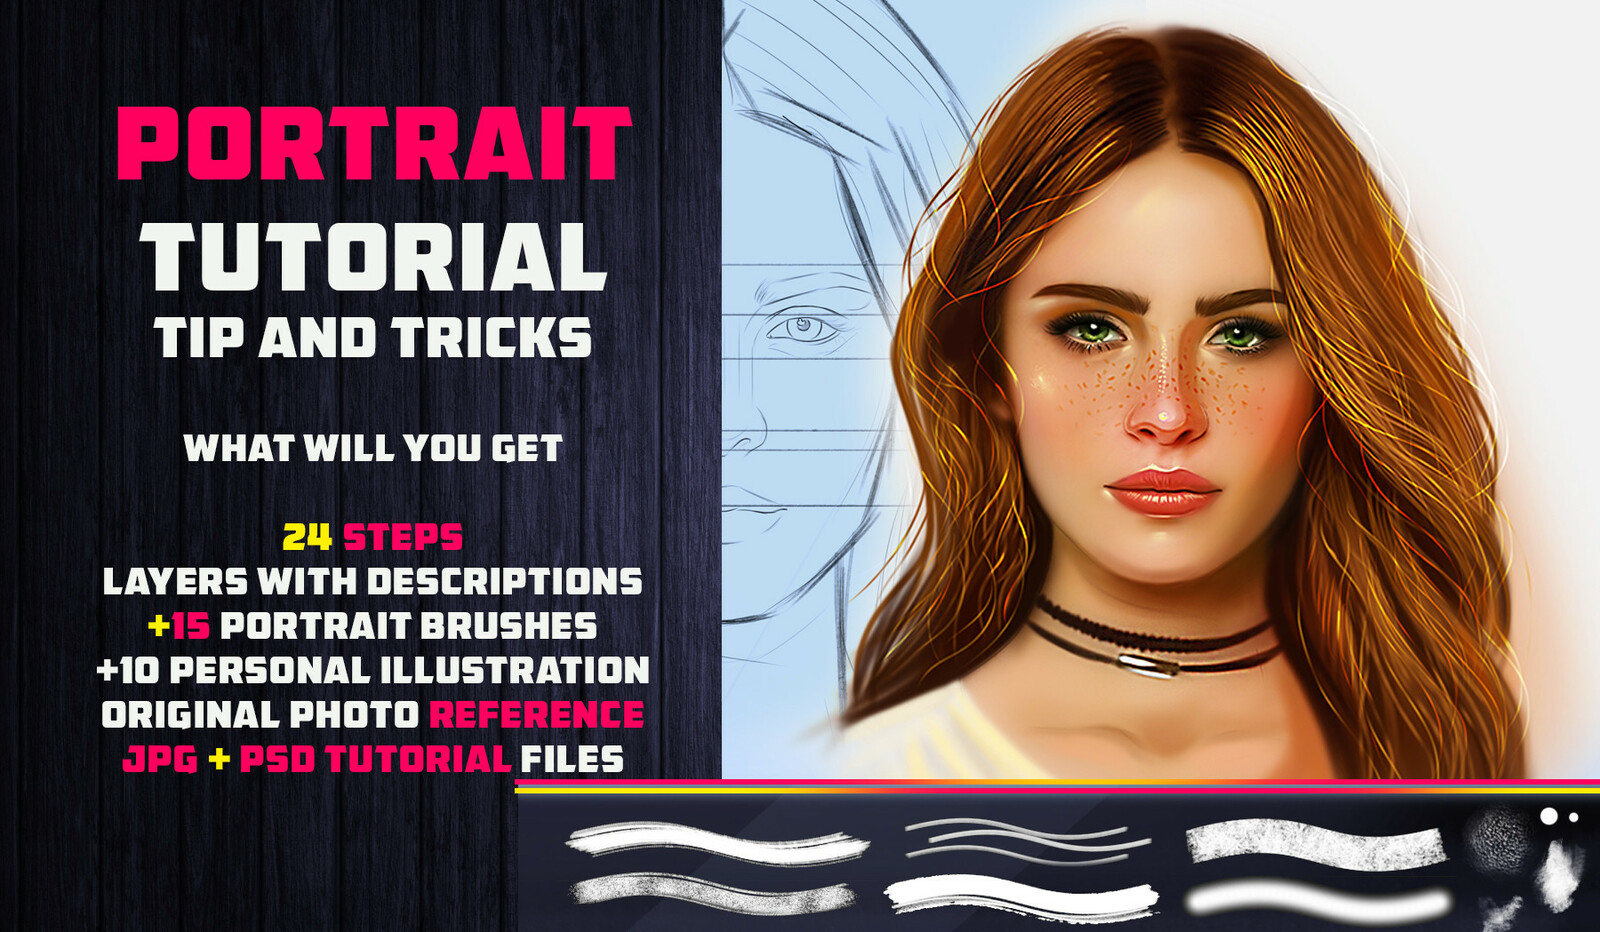 Artstation Marketplace Link:
https://www.artstation.com/vurdem/store/o1gP/portrait-tutorial-15-brushes-tip-and-tricks-photoshop
